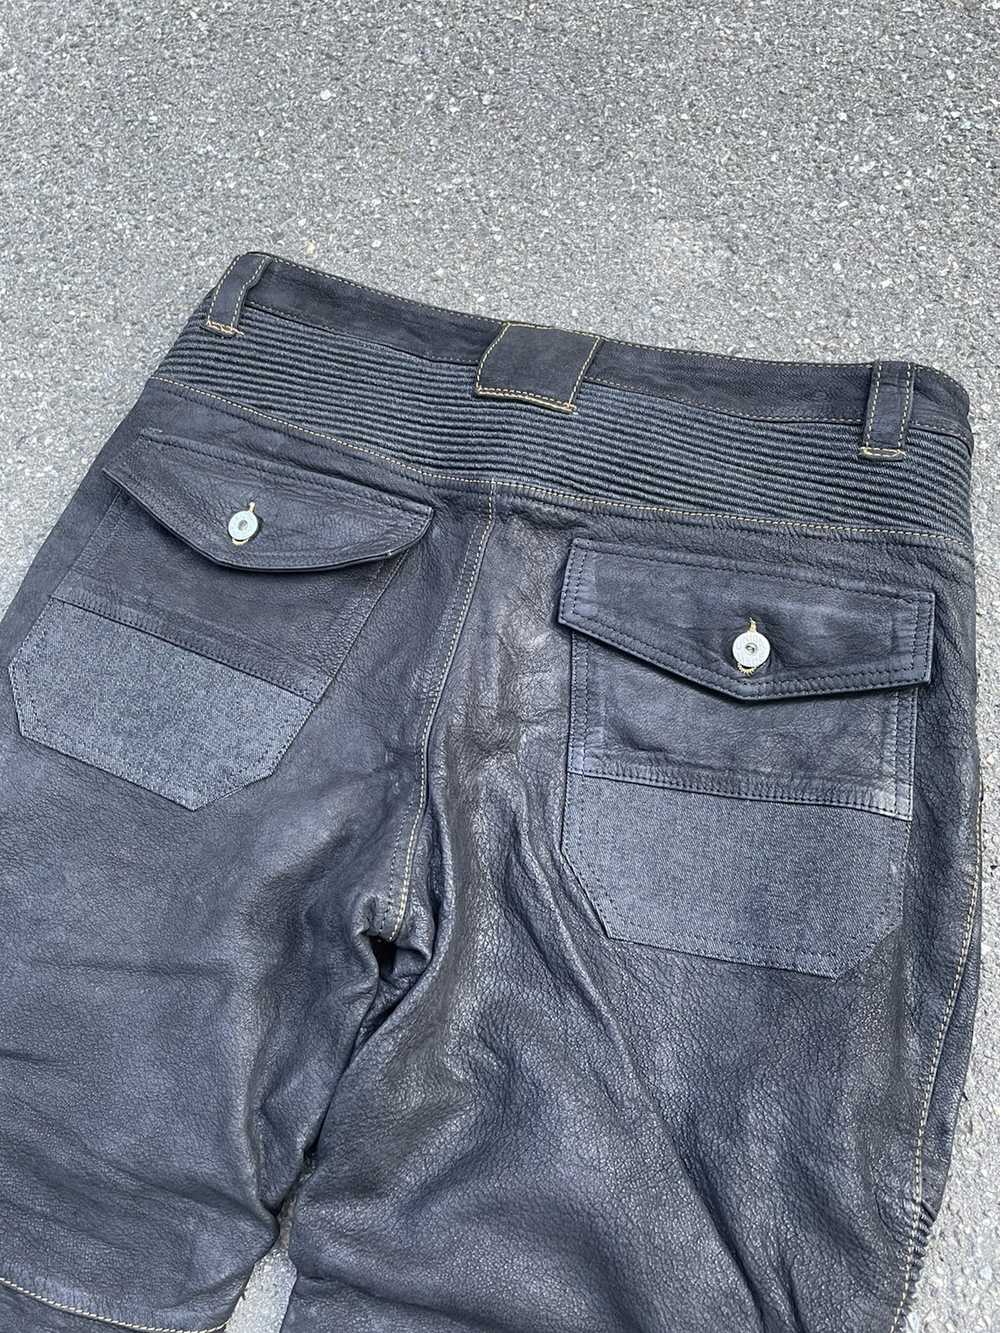 Biker Jeans × Genuine Leather × Vintage Vintage C… - image 9